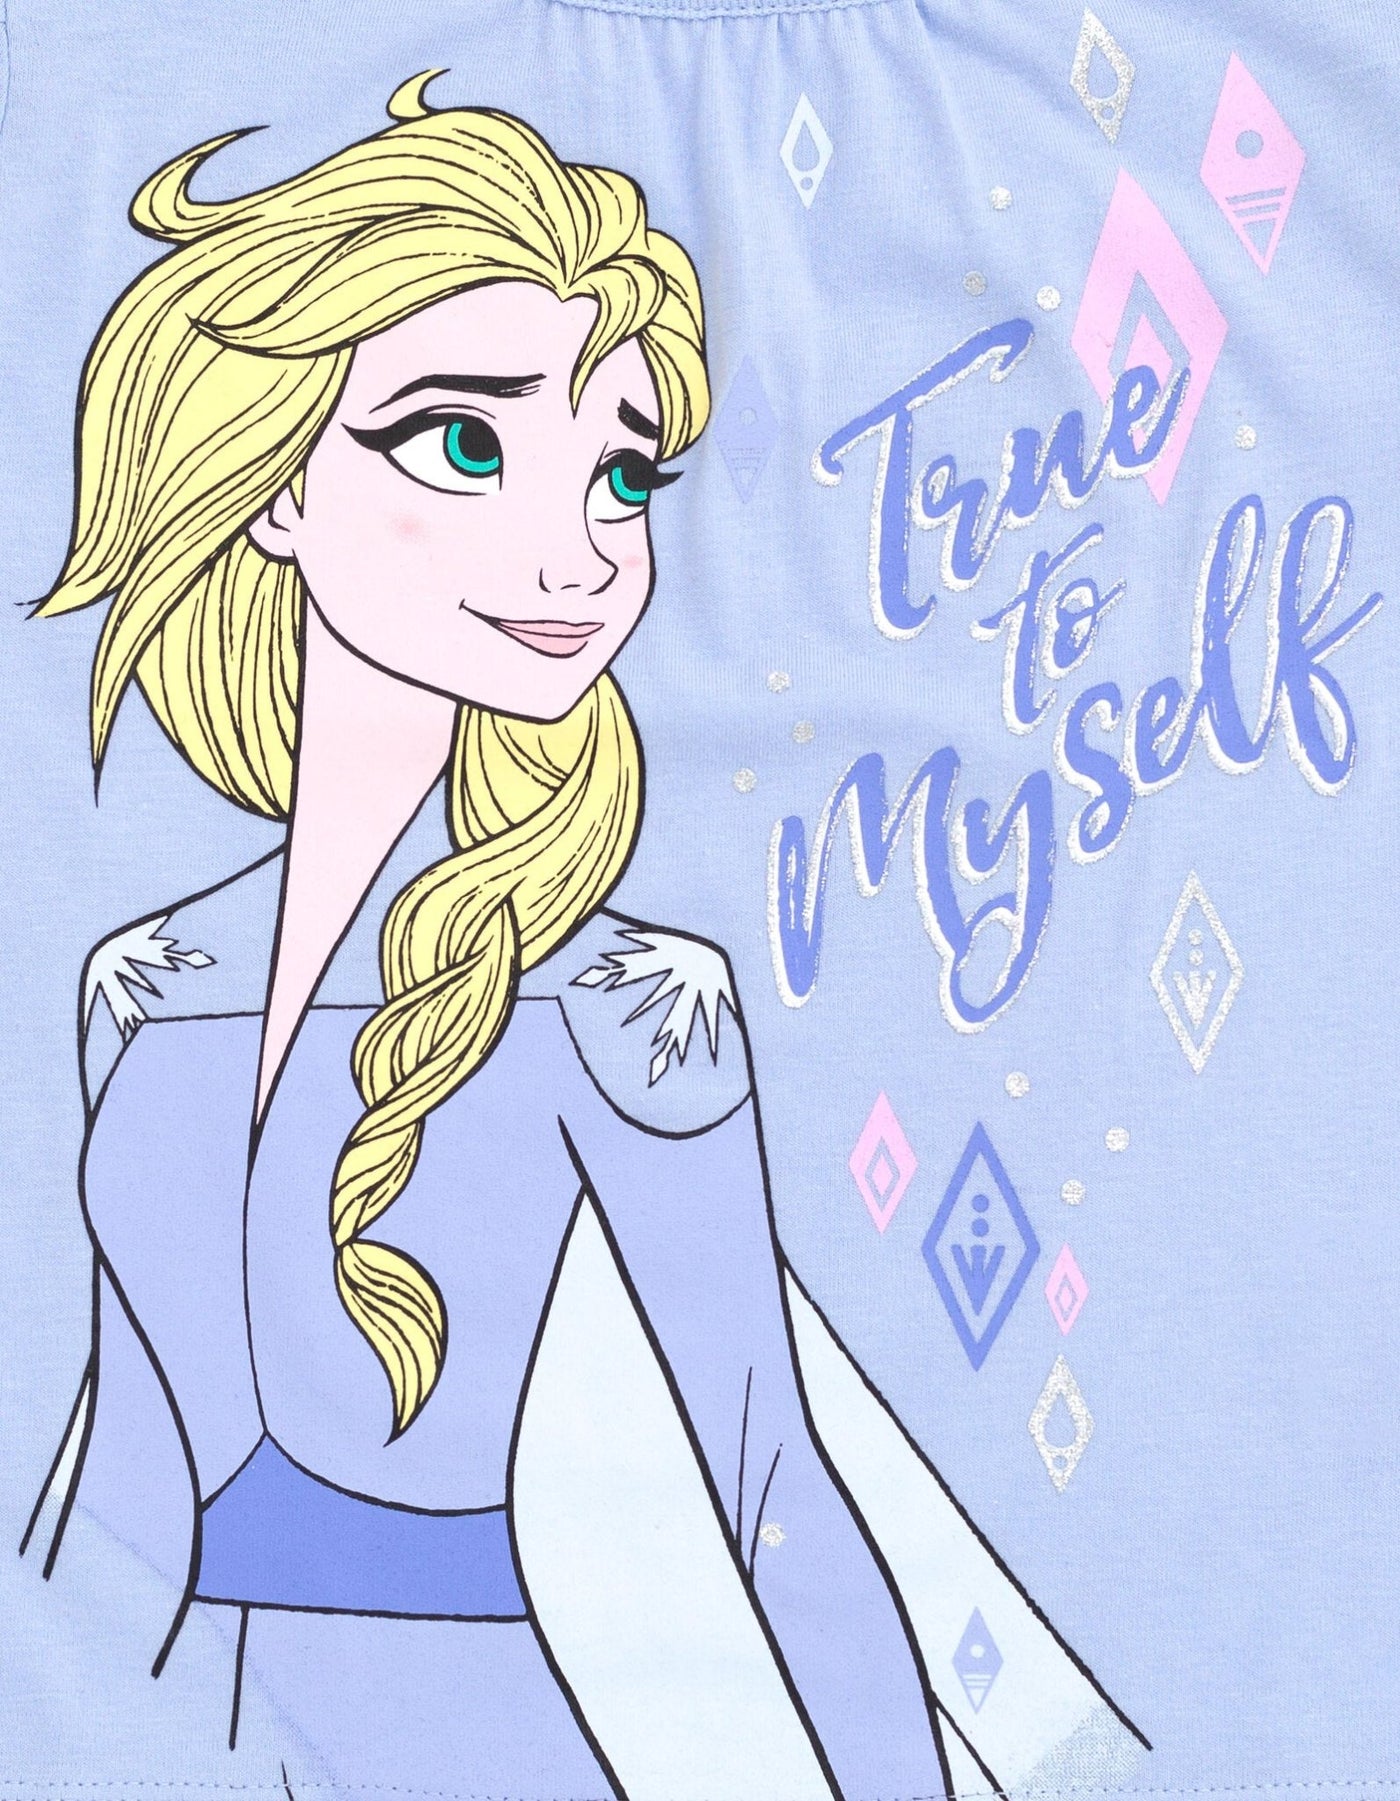 Disney Frozen Queen Elsa Cosplay T-Shirt Mesh Skirt and Scrunchie 3 Piece Outfit Set - imagikids